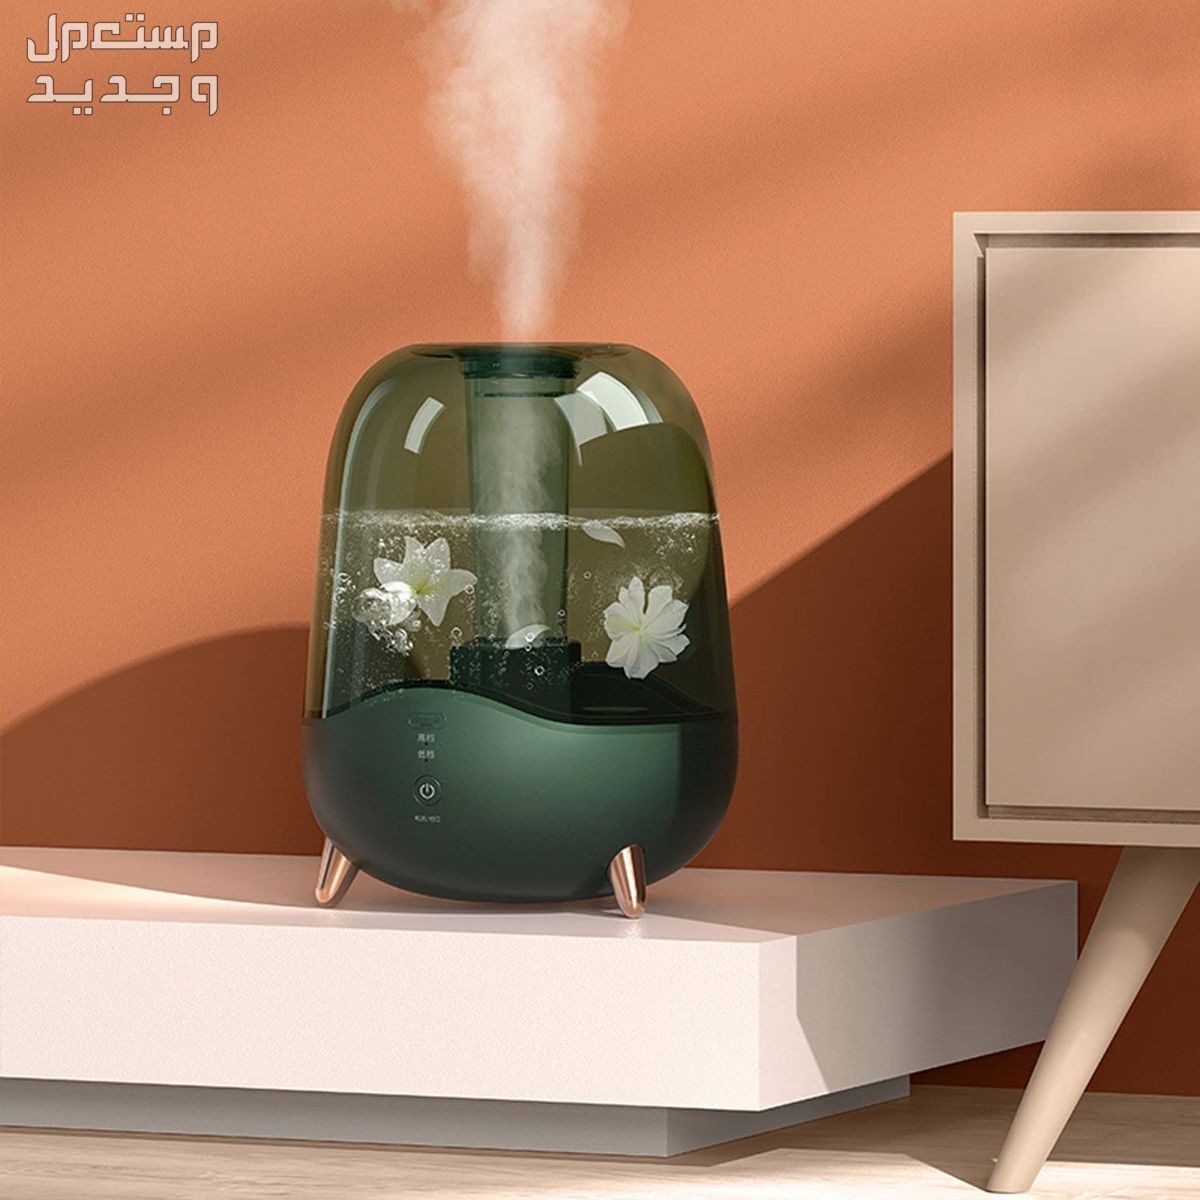 كيف يعمل جهاز التعطير الذكي في المنزل في الإمارات العربية المتحدة طريقة عمل جهاز التعطير